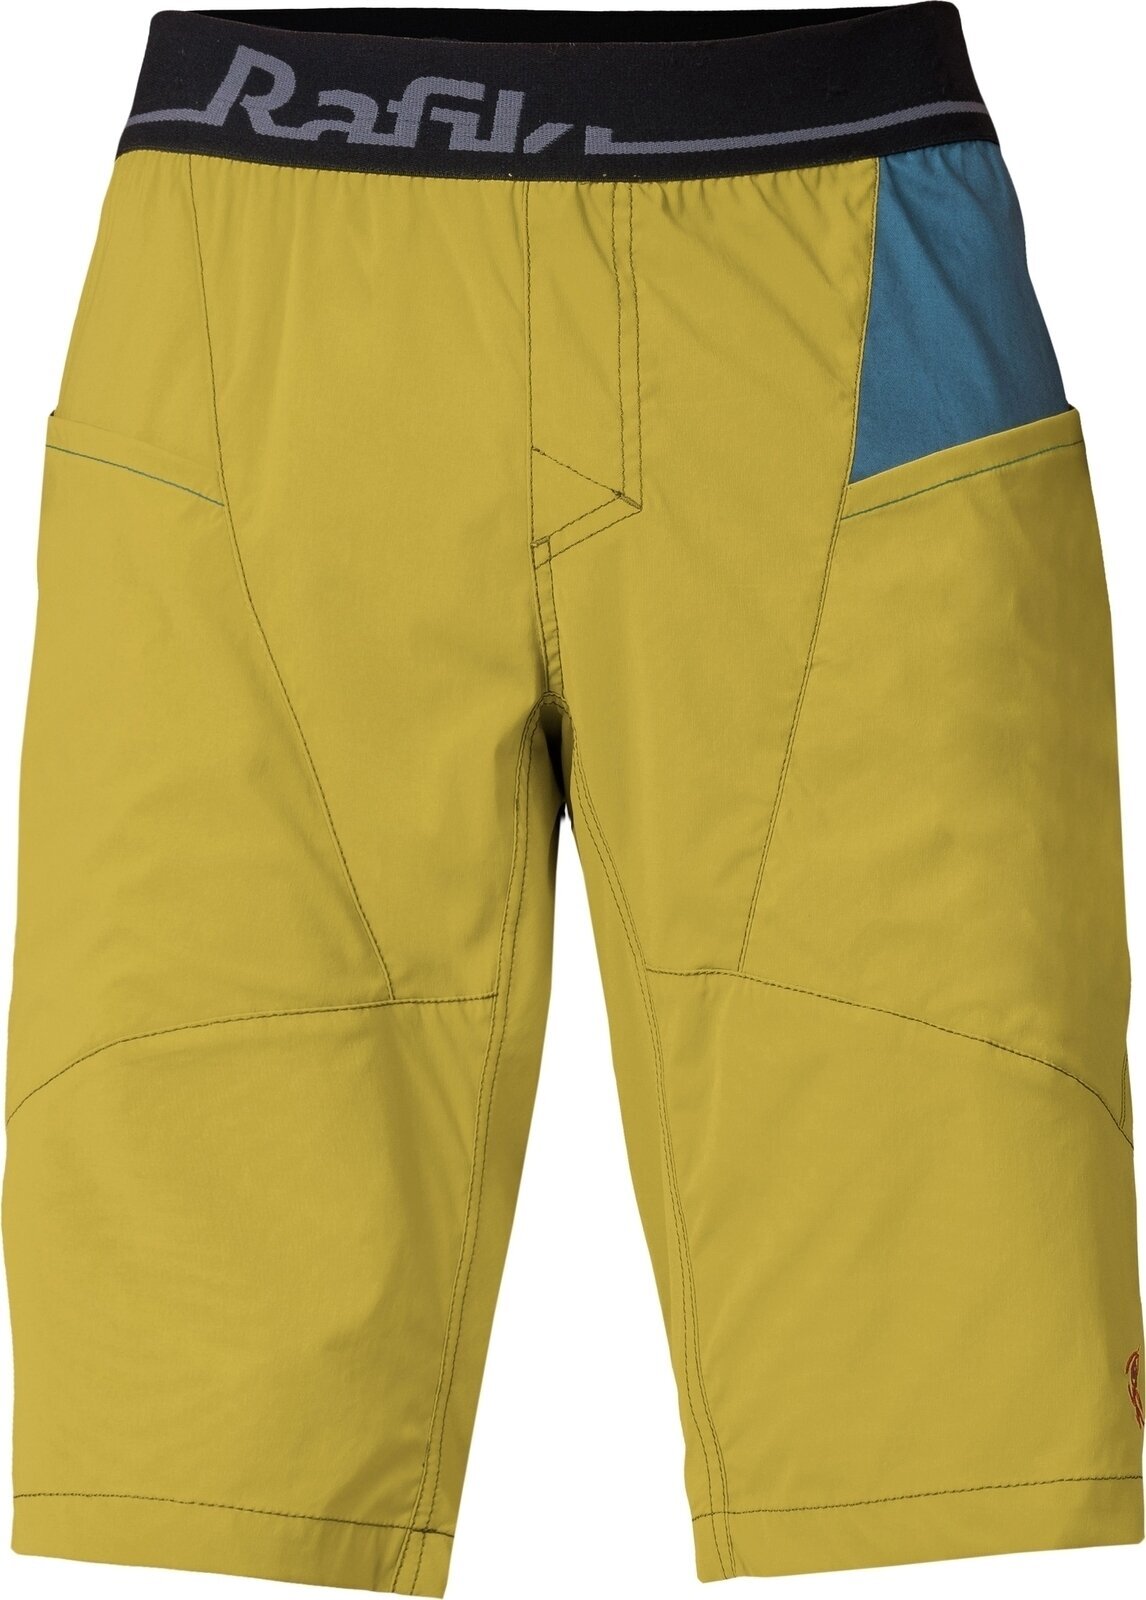 Outdoorshorts Rafiki Megos Man Shorts Cress Green/Stargazer M Outdoorshorts